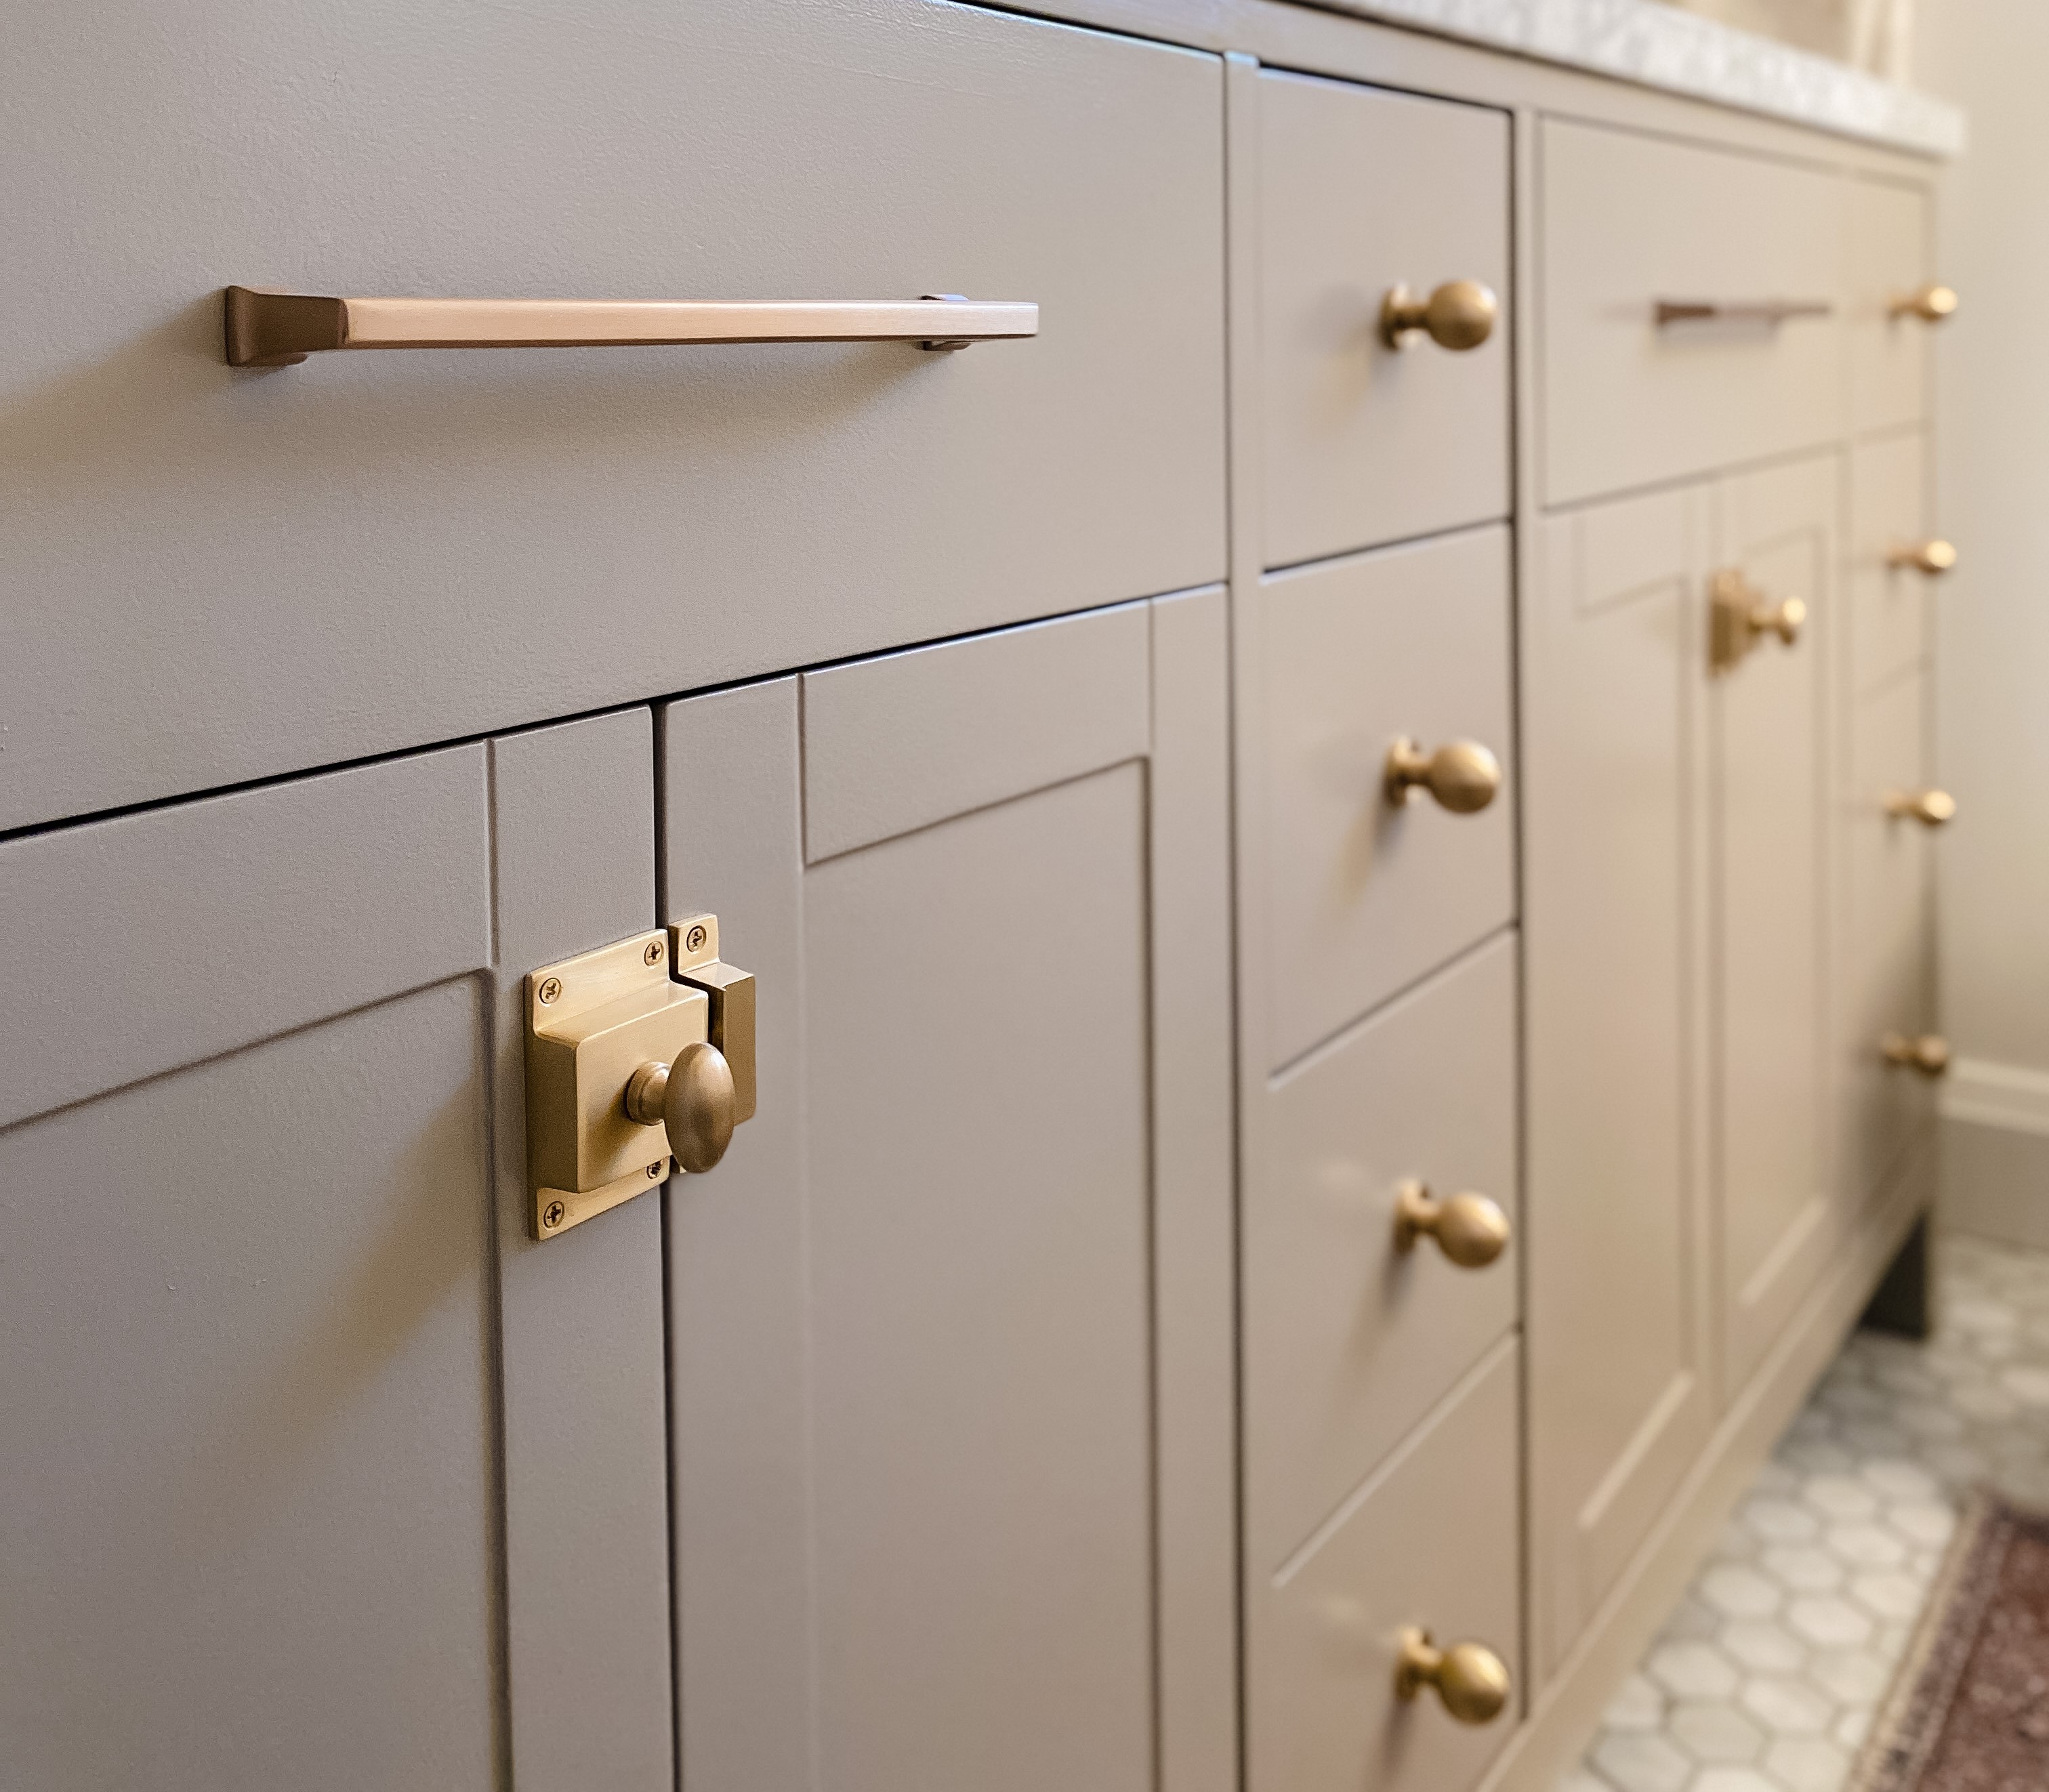 Cabinet Locks in Kitchen Cabinet Hardware 